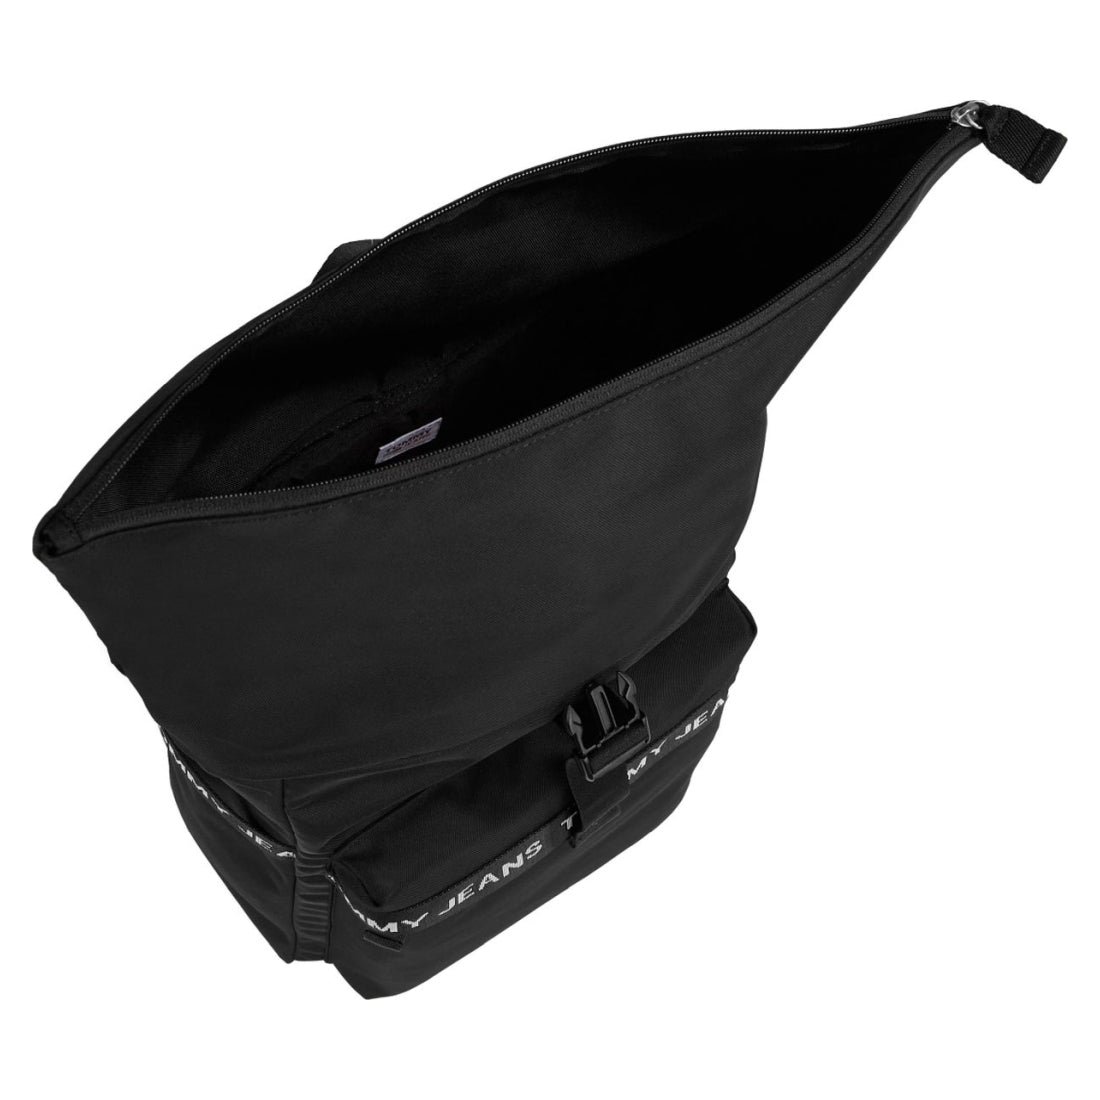 Tommy Jeans mens black essential rolltop backpack | Vilbury London